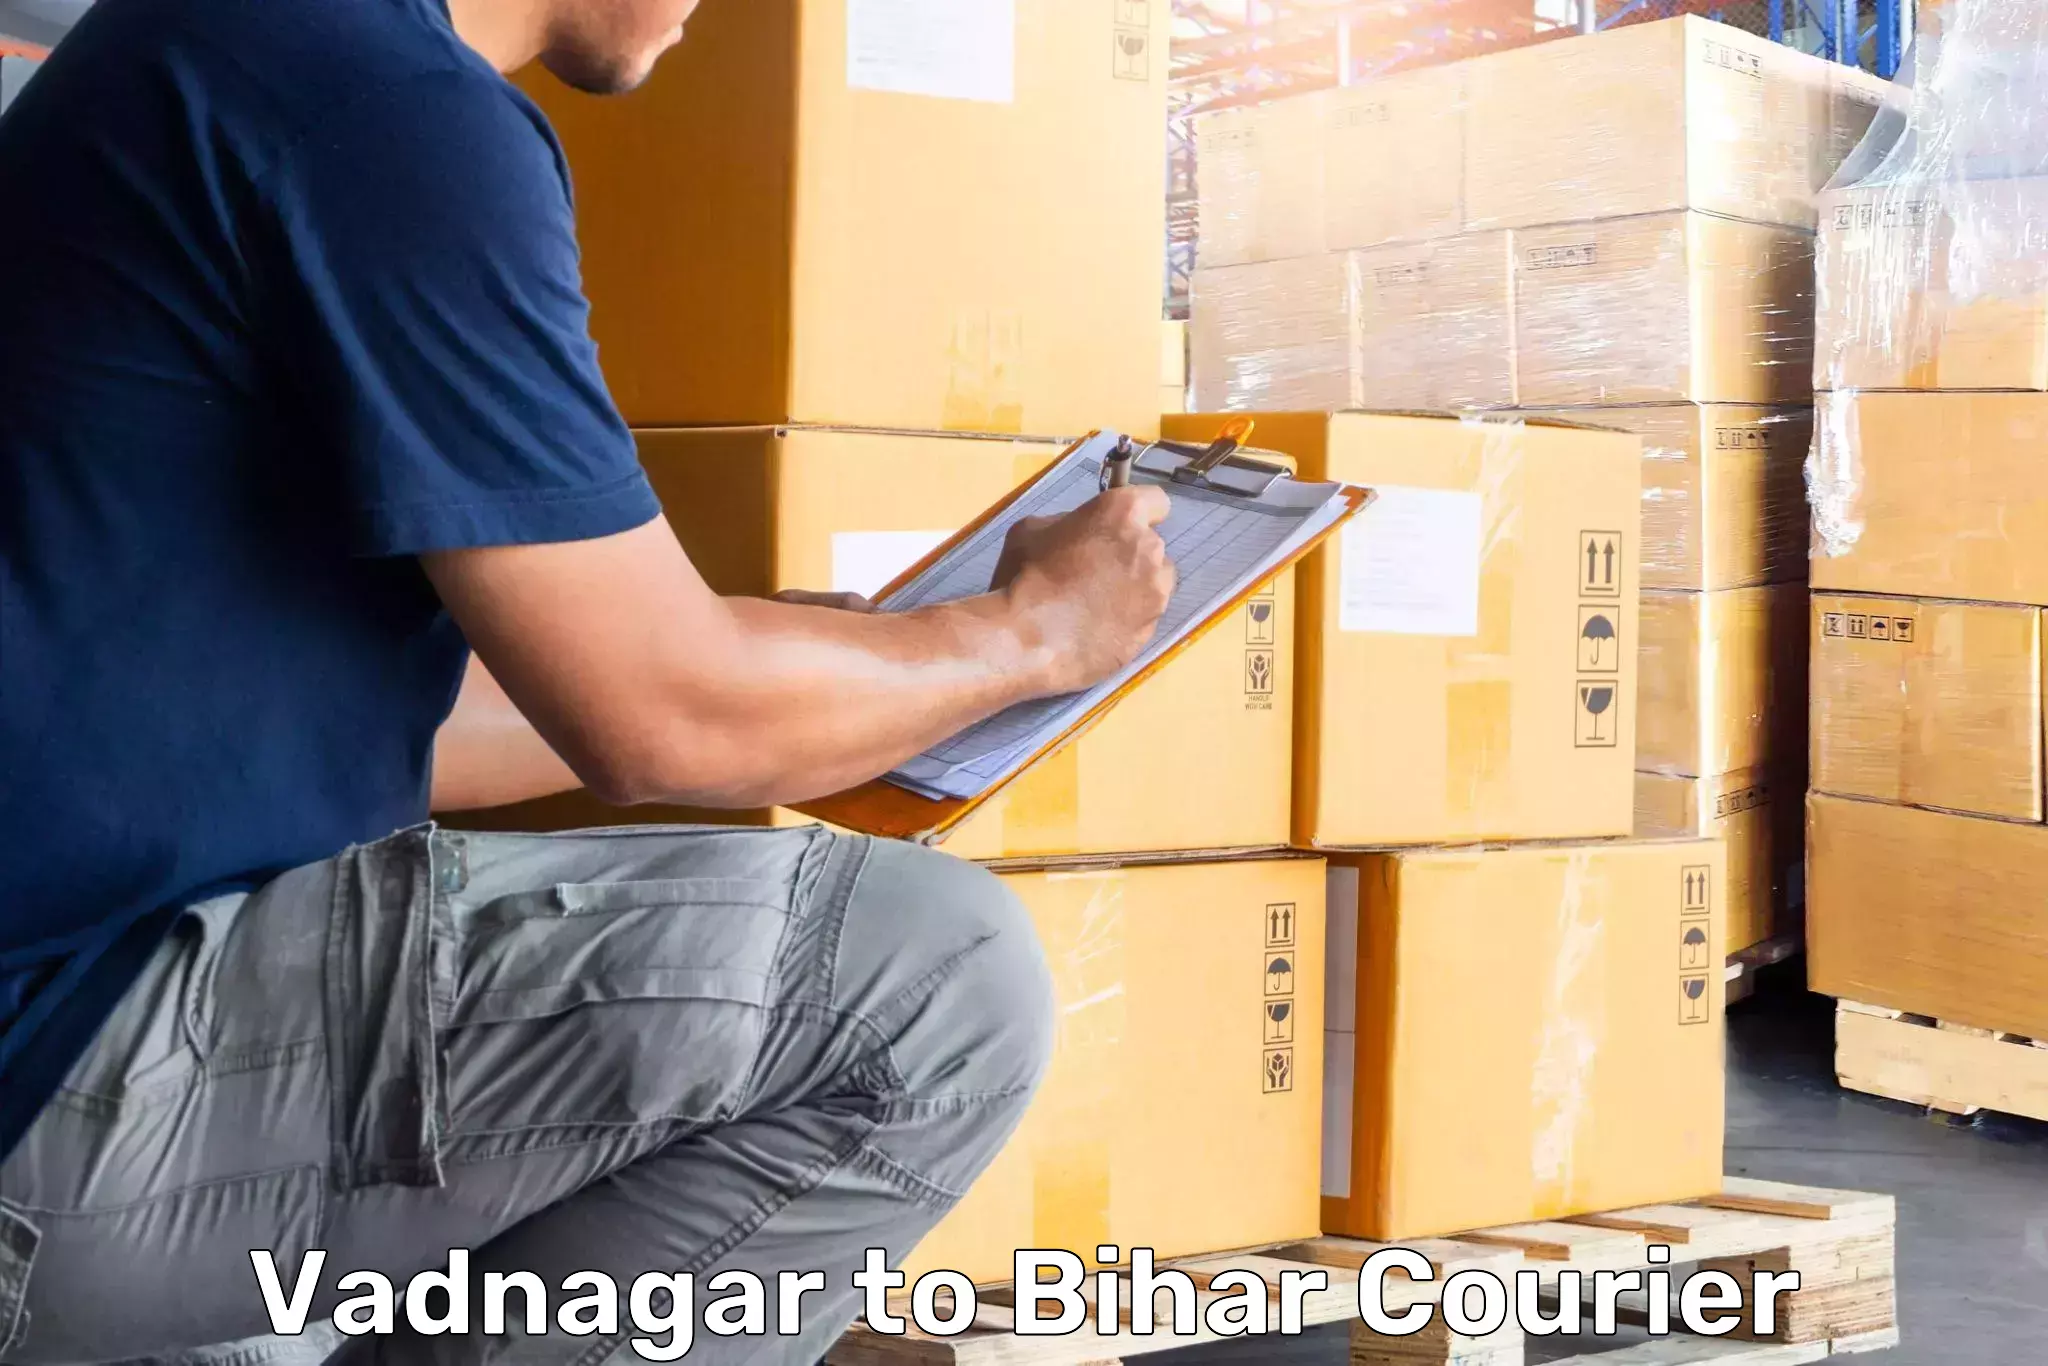 Baggage shipping experience in Vadnagar to Alamnagar